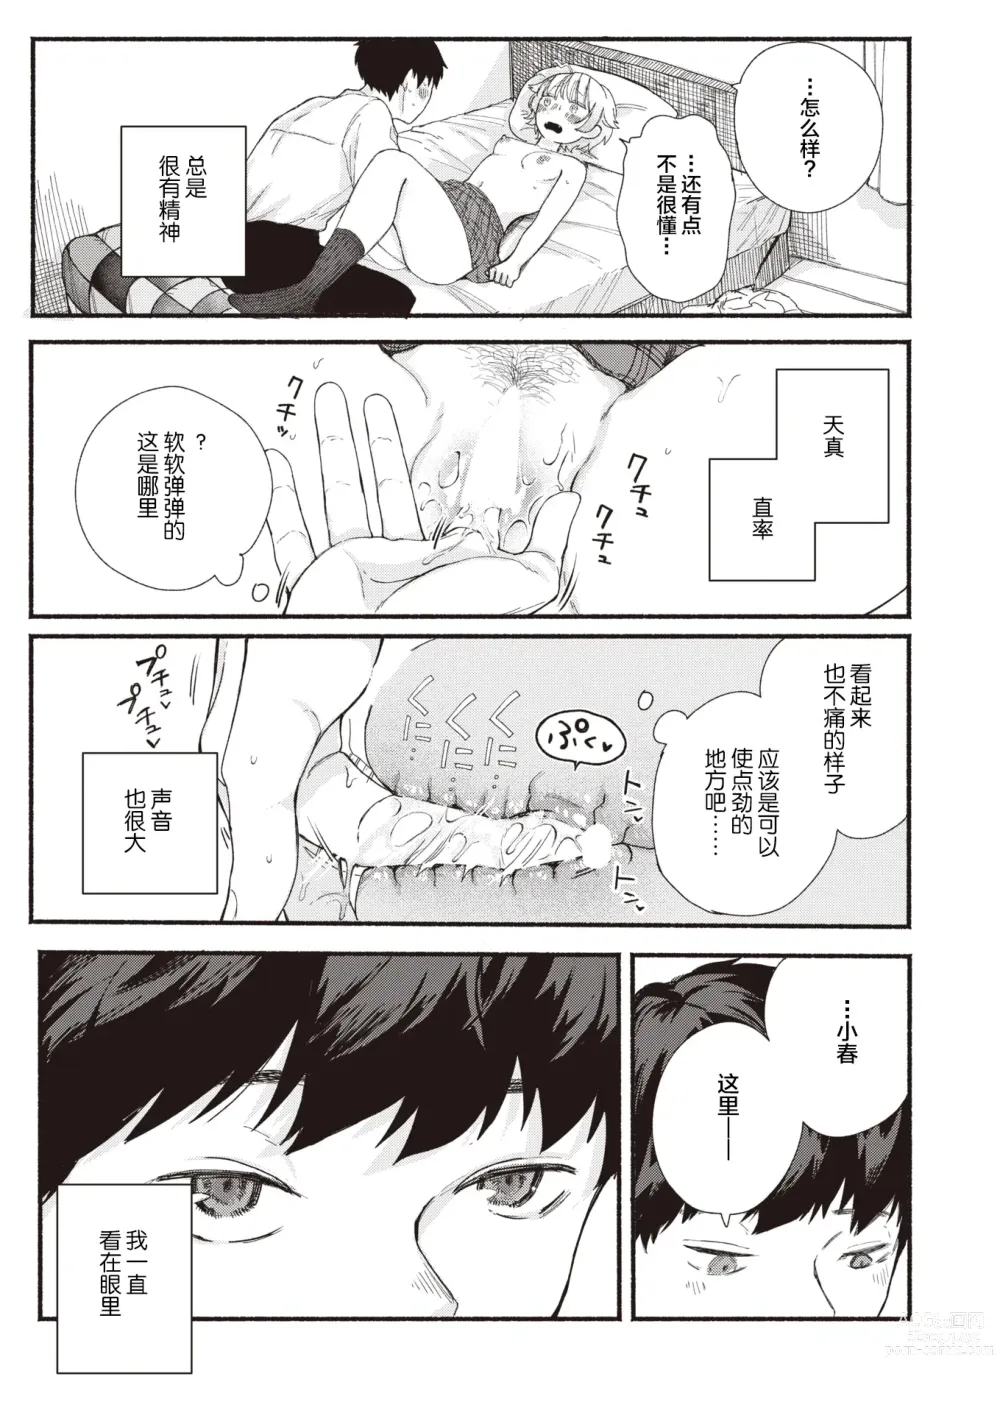 Page 9 of manga Sekka no Saezuri